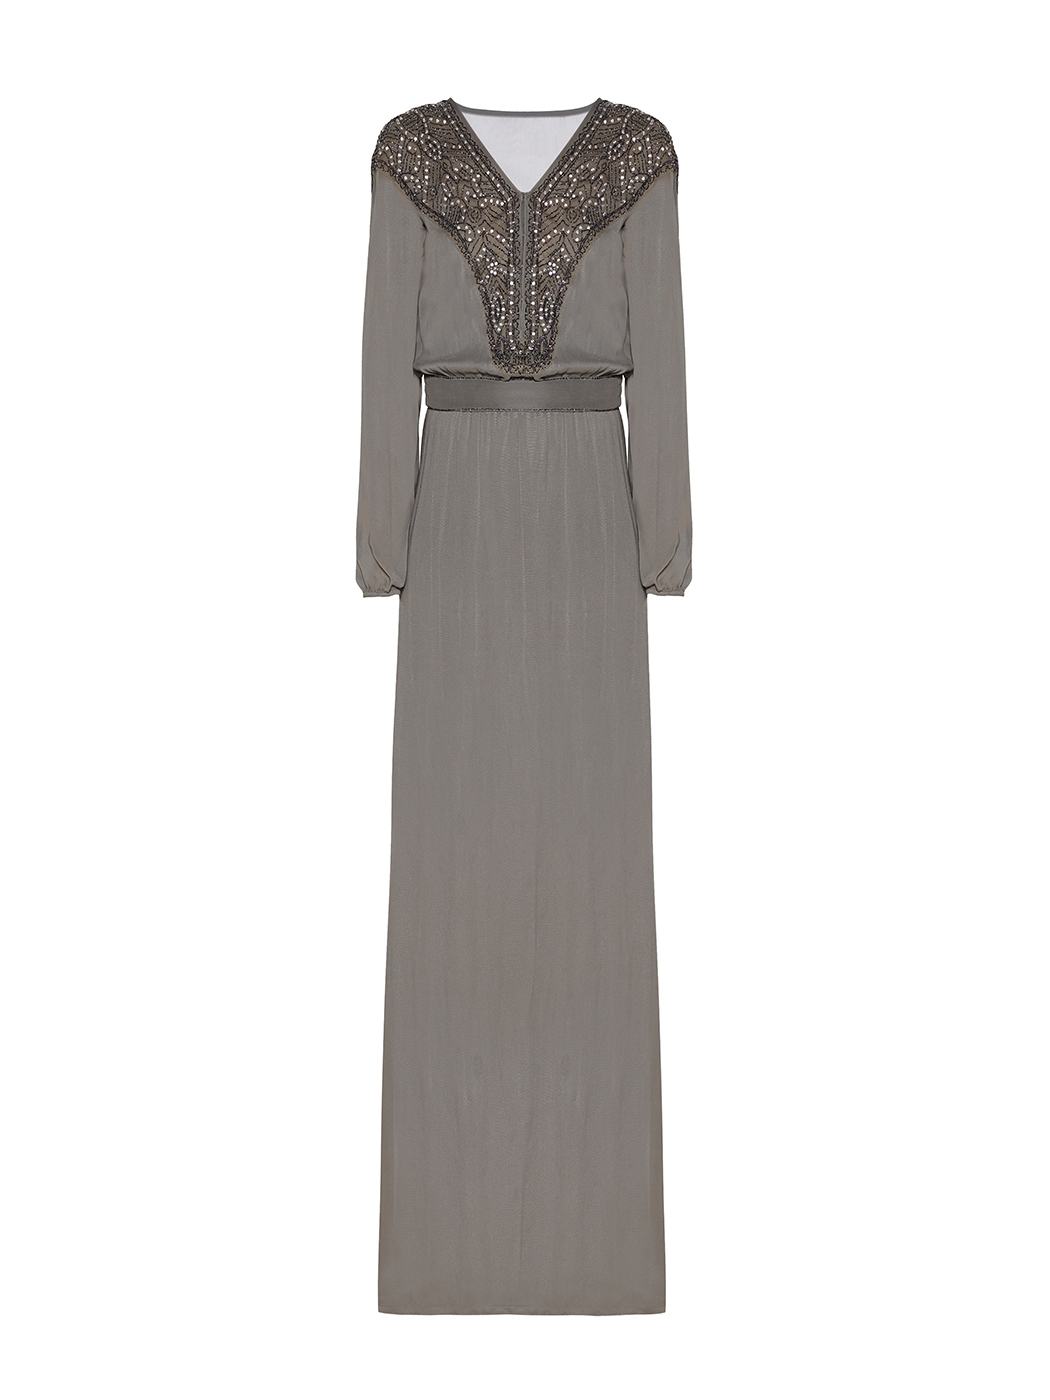 Maxi vestido de gasa de inspiración bohemia con un diseño bordado a mano de pedrería en canesú que imita al cristal para aligerar la prenda.